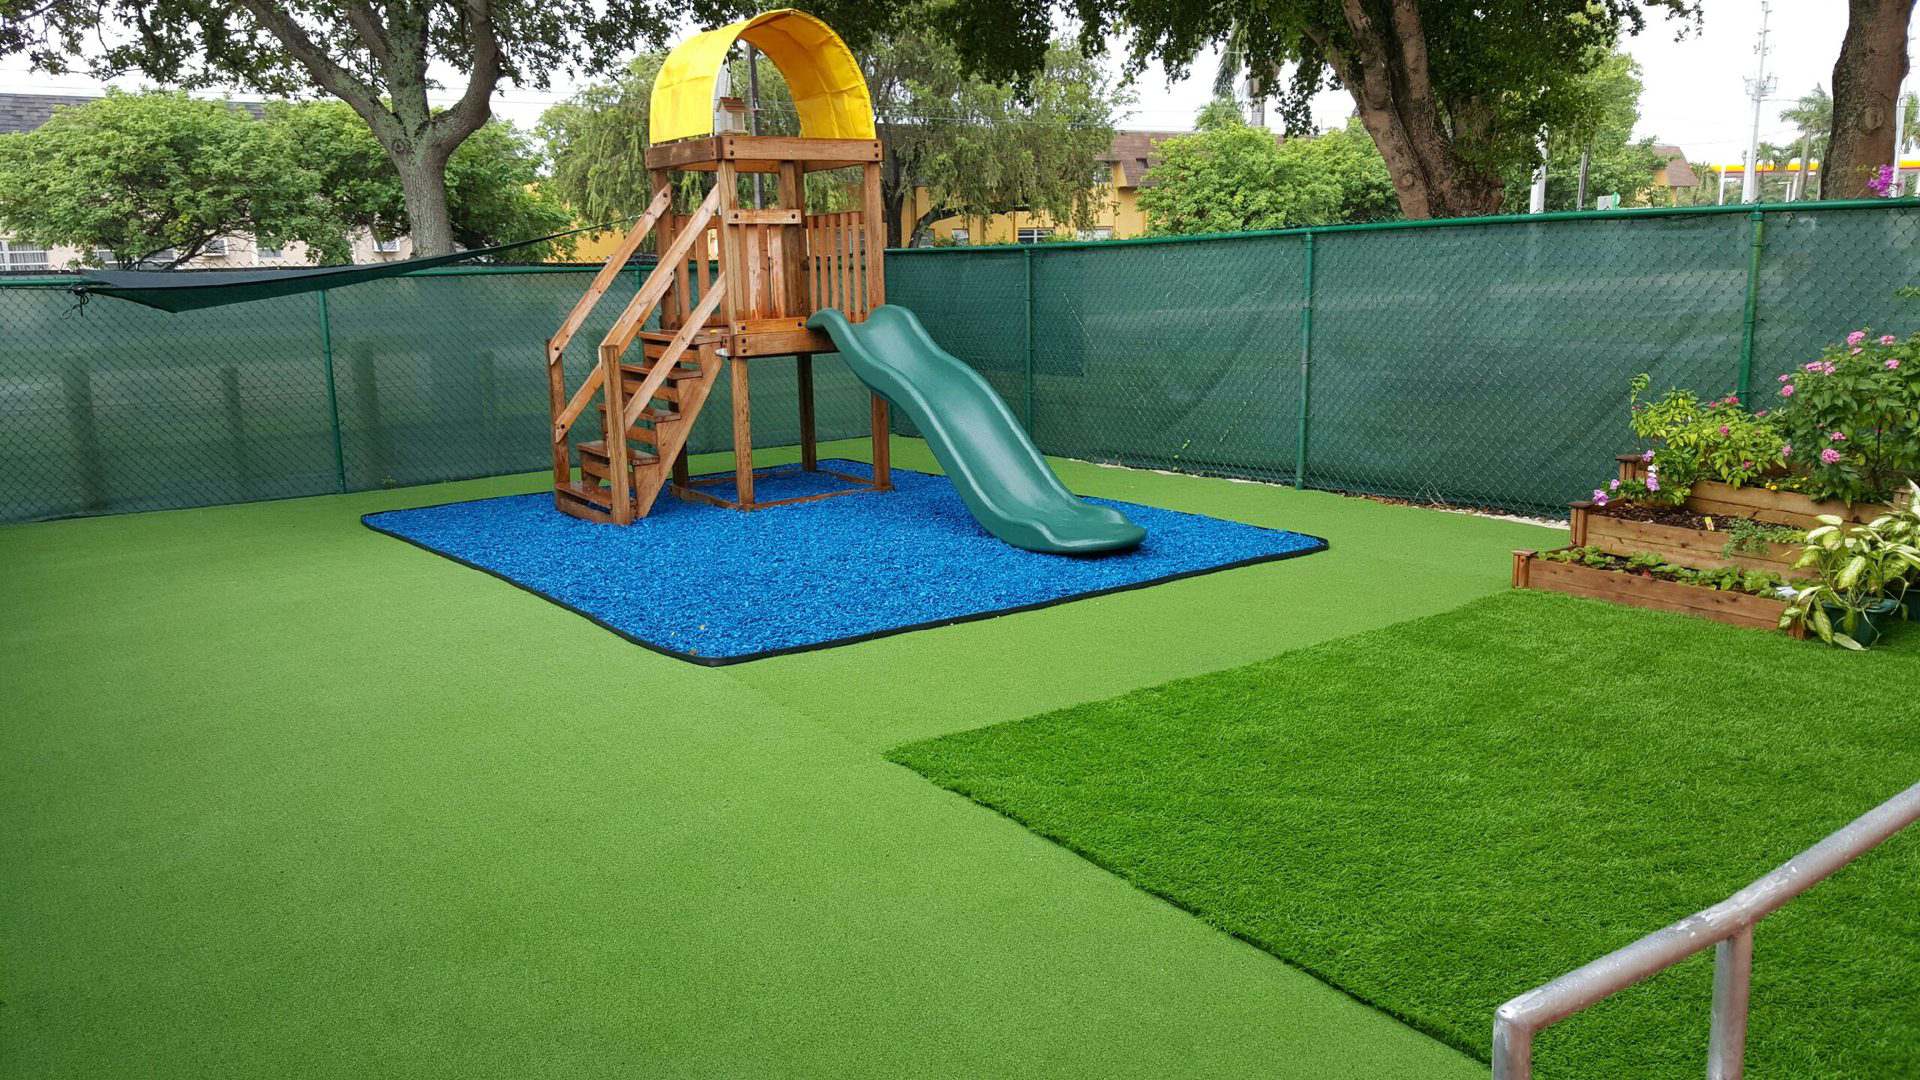 A slider for children with blue grass mat